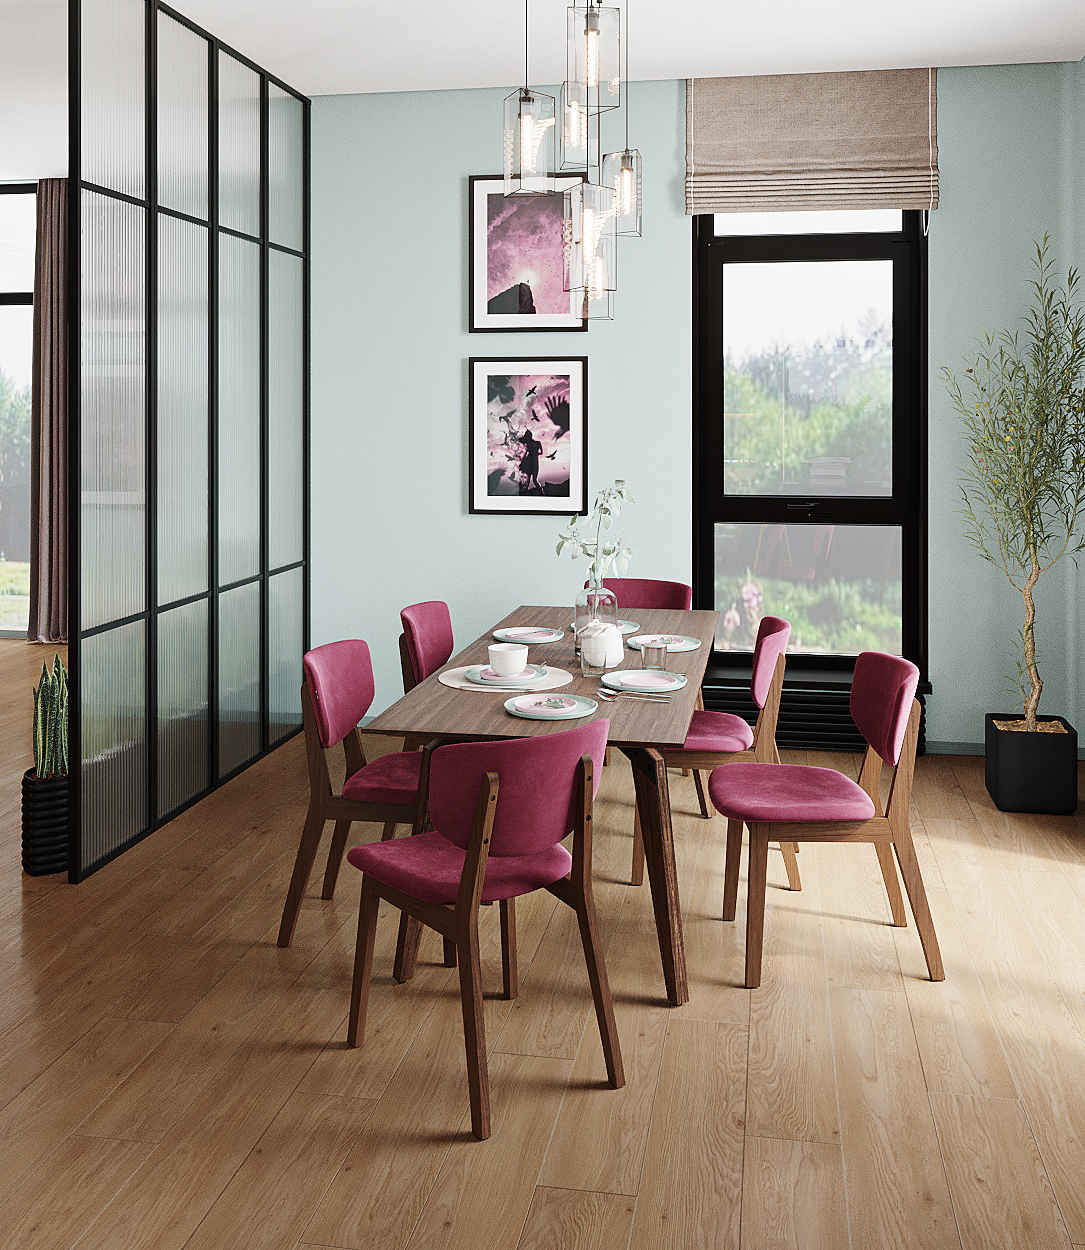 Кухня с розовыми стульями интерьер